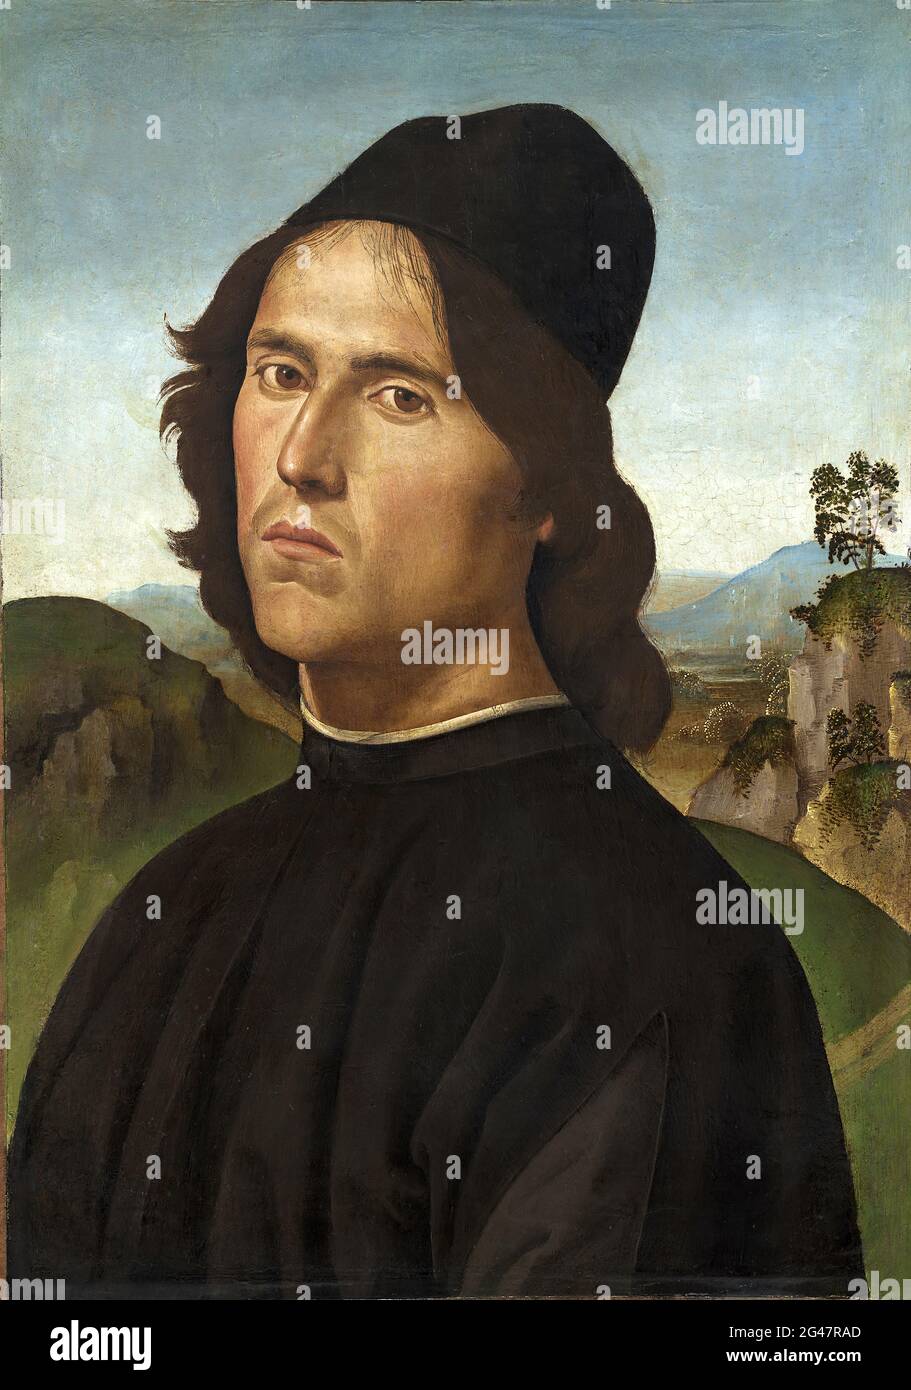 Pietro Perugino - Portrait of Lorenzo DI Credi Stock Photo - Alamy